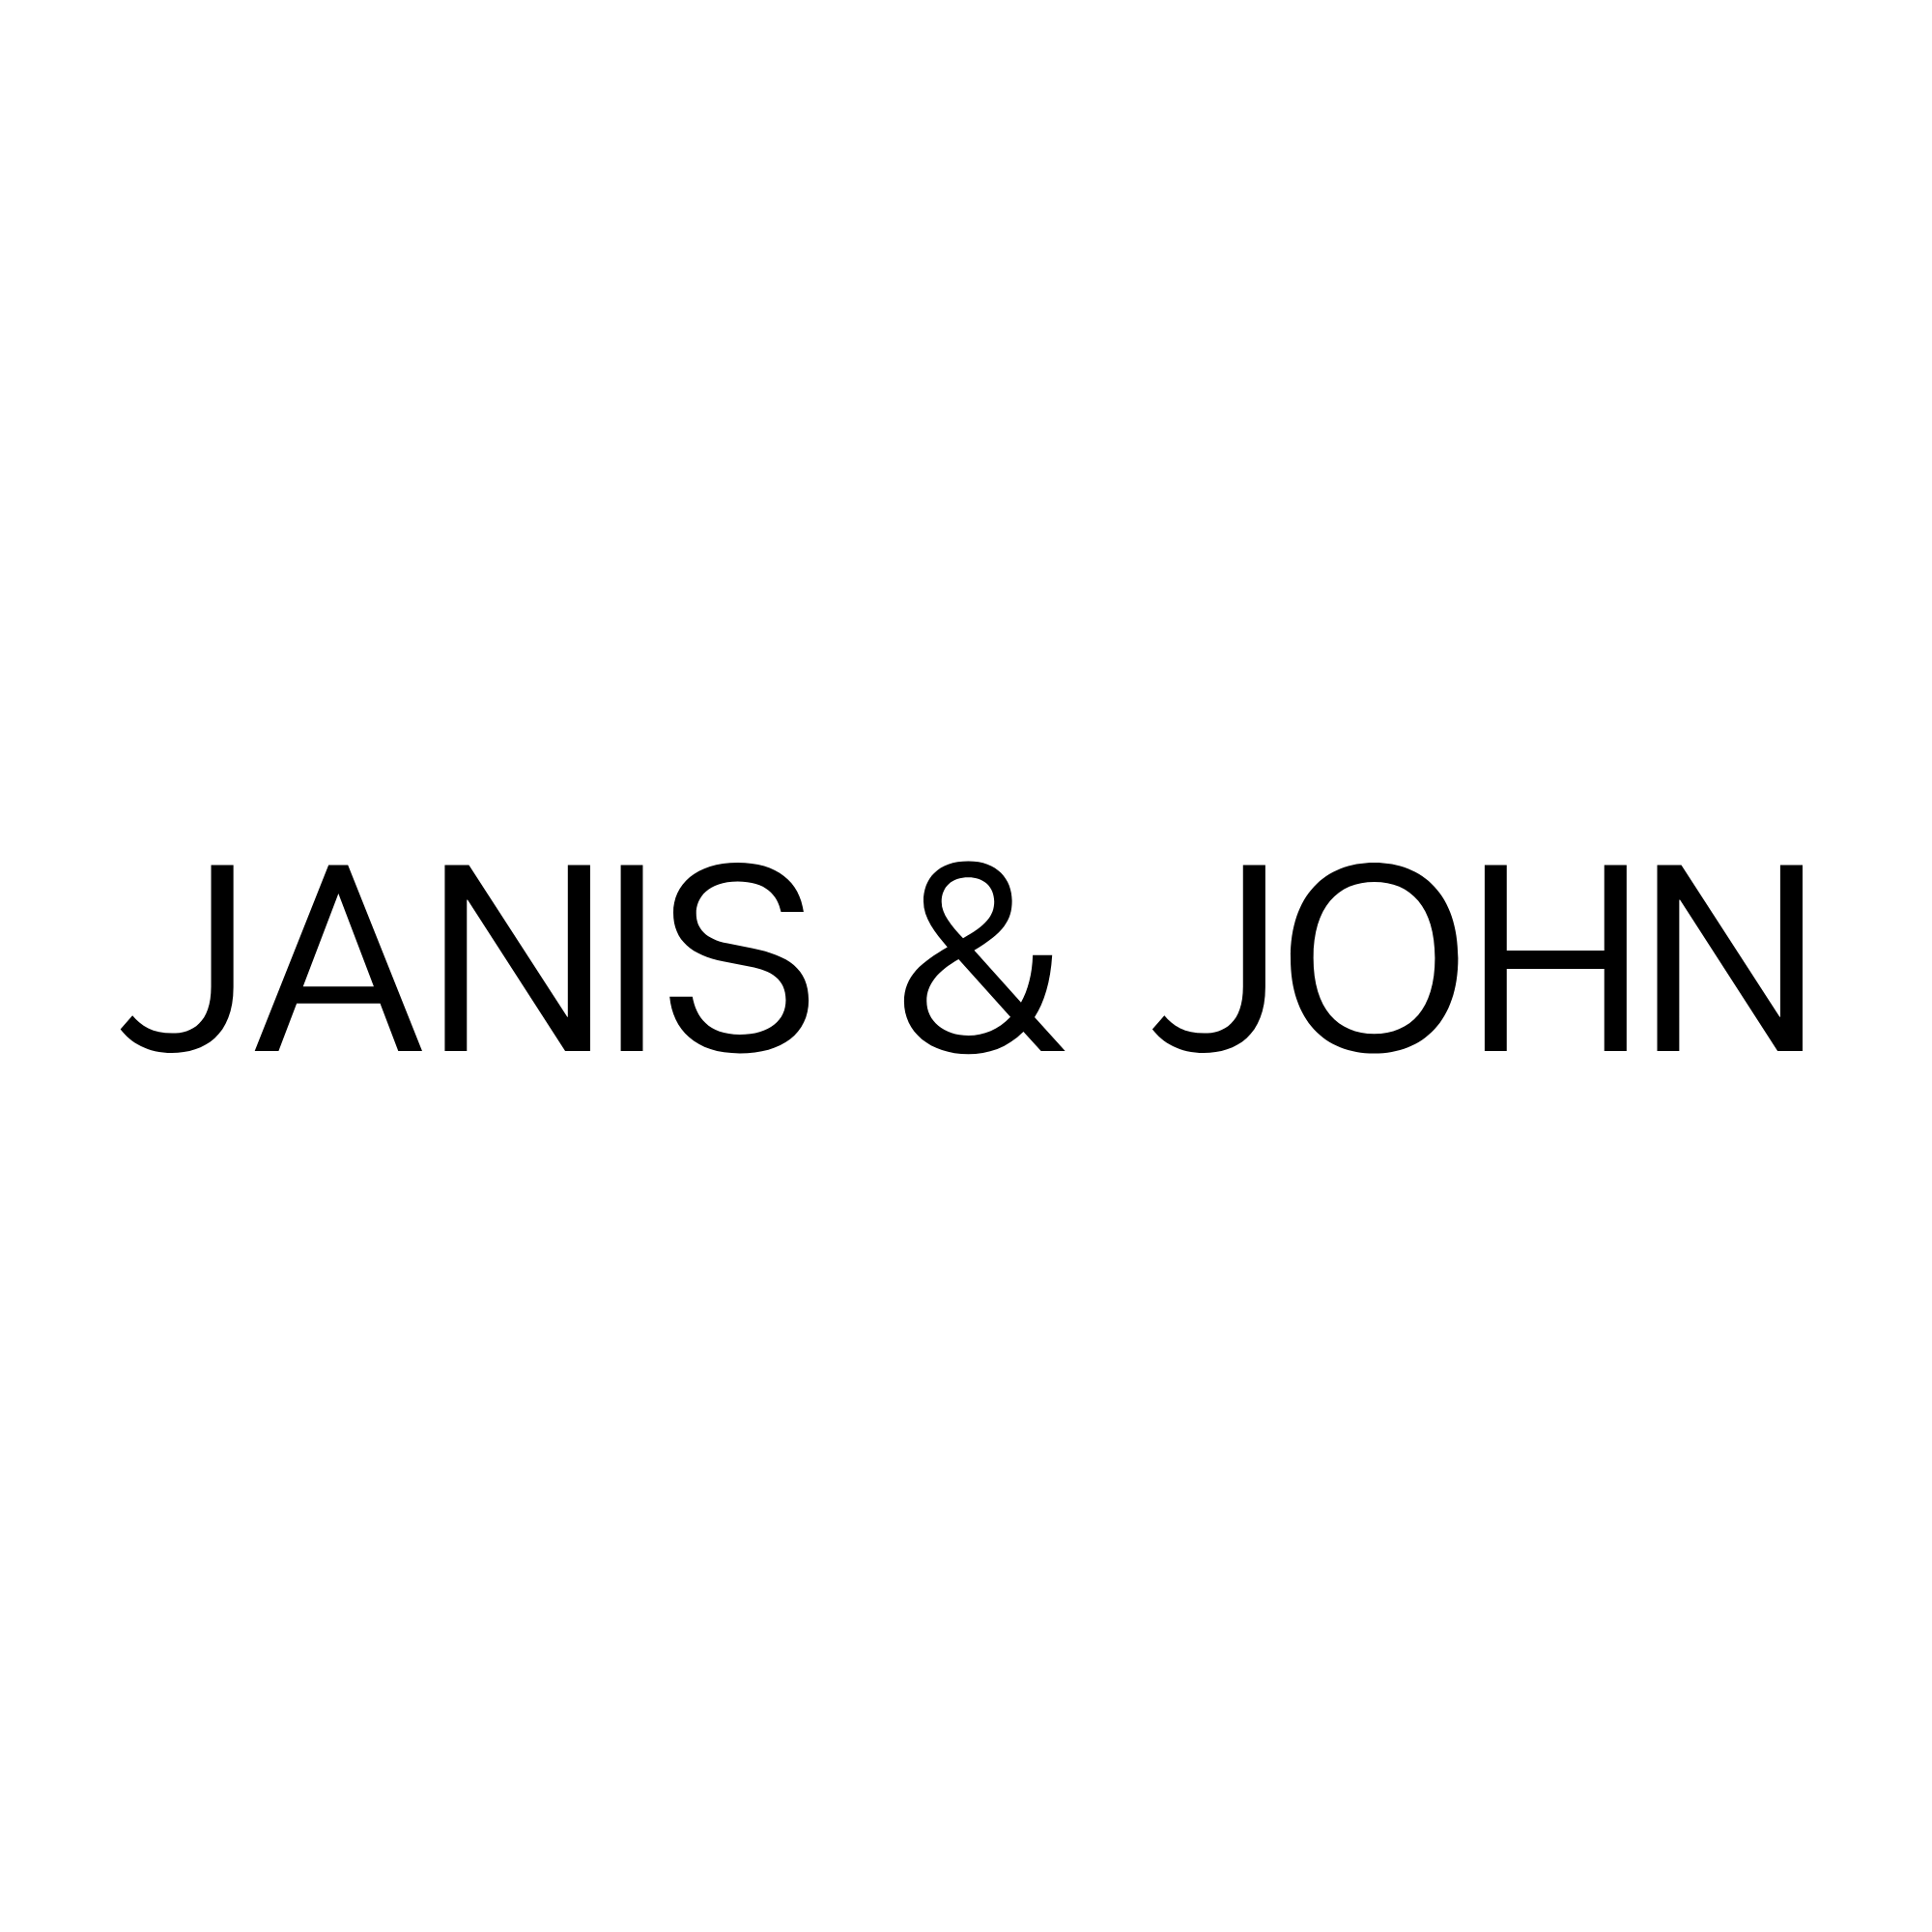 JANIS & JOHN